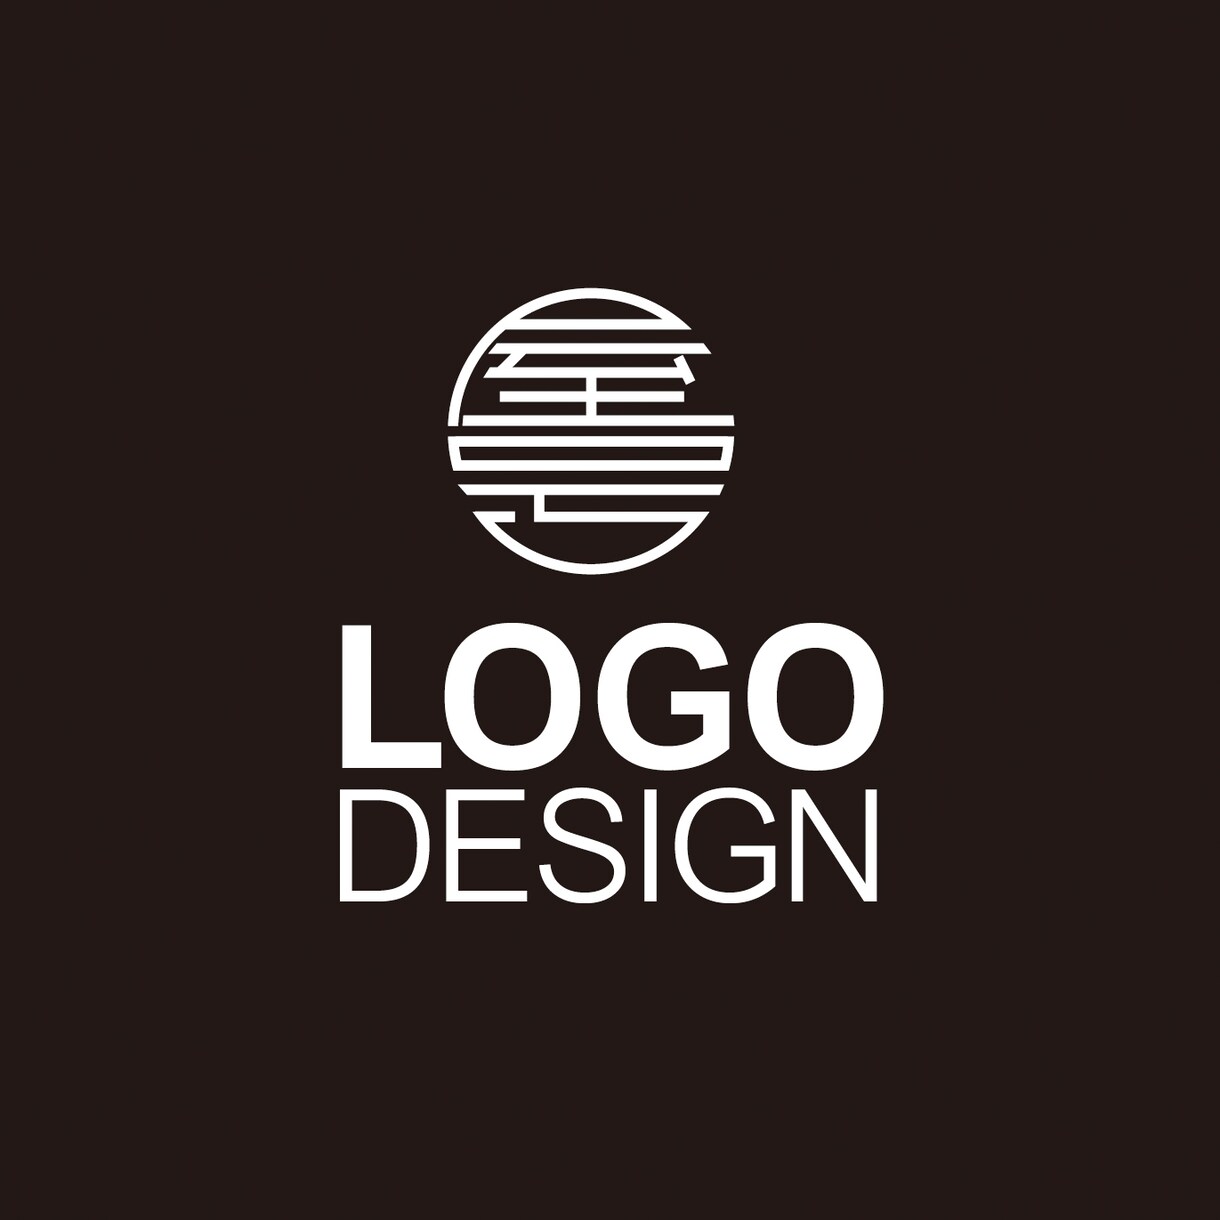 想いを込めたロゴをプロがデザイン致します 企業やショップ等の実績多数有ります。 イメージ1